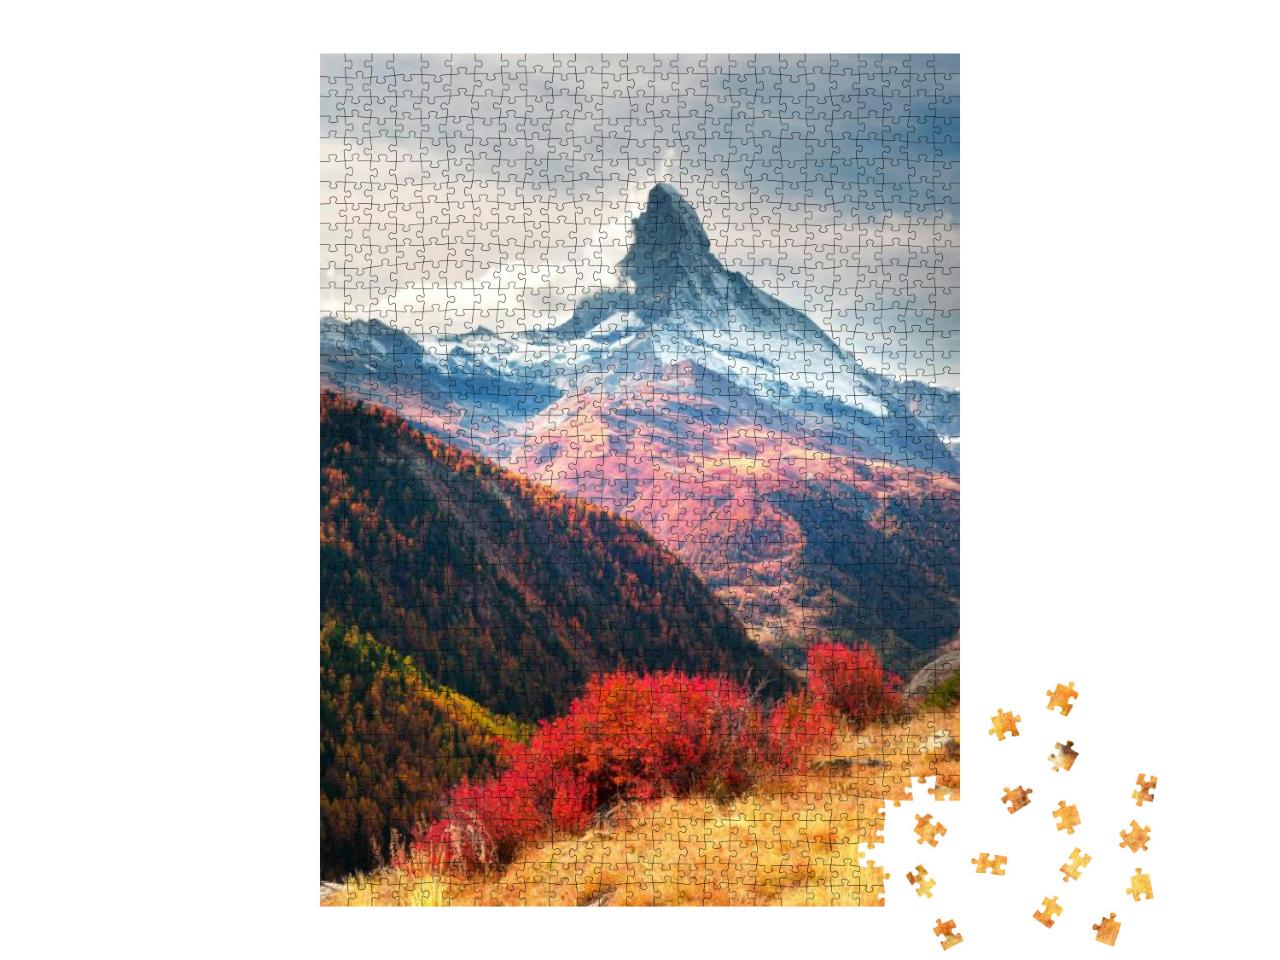 Puzzle 1000 Teile „Matterhorngipfel im Herbst, Schweiz“